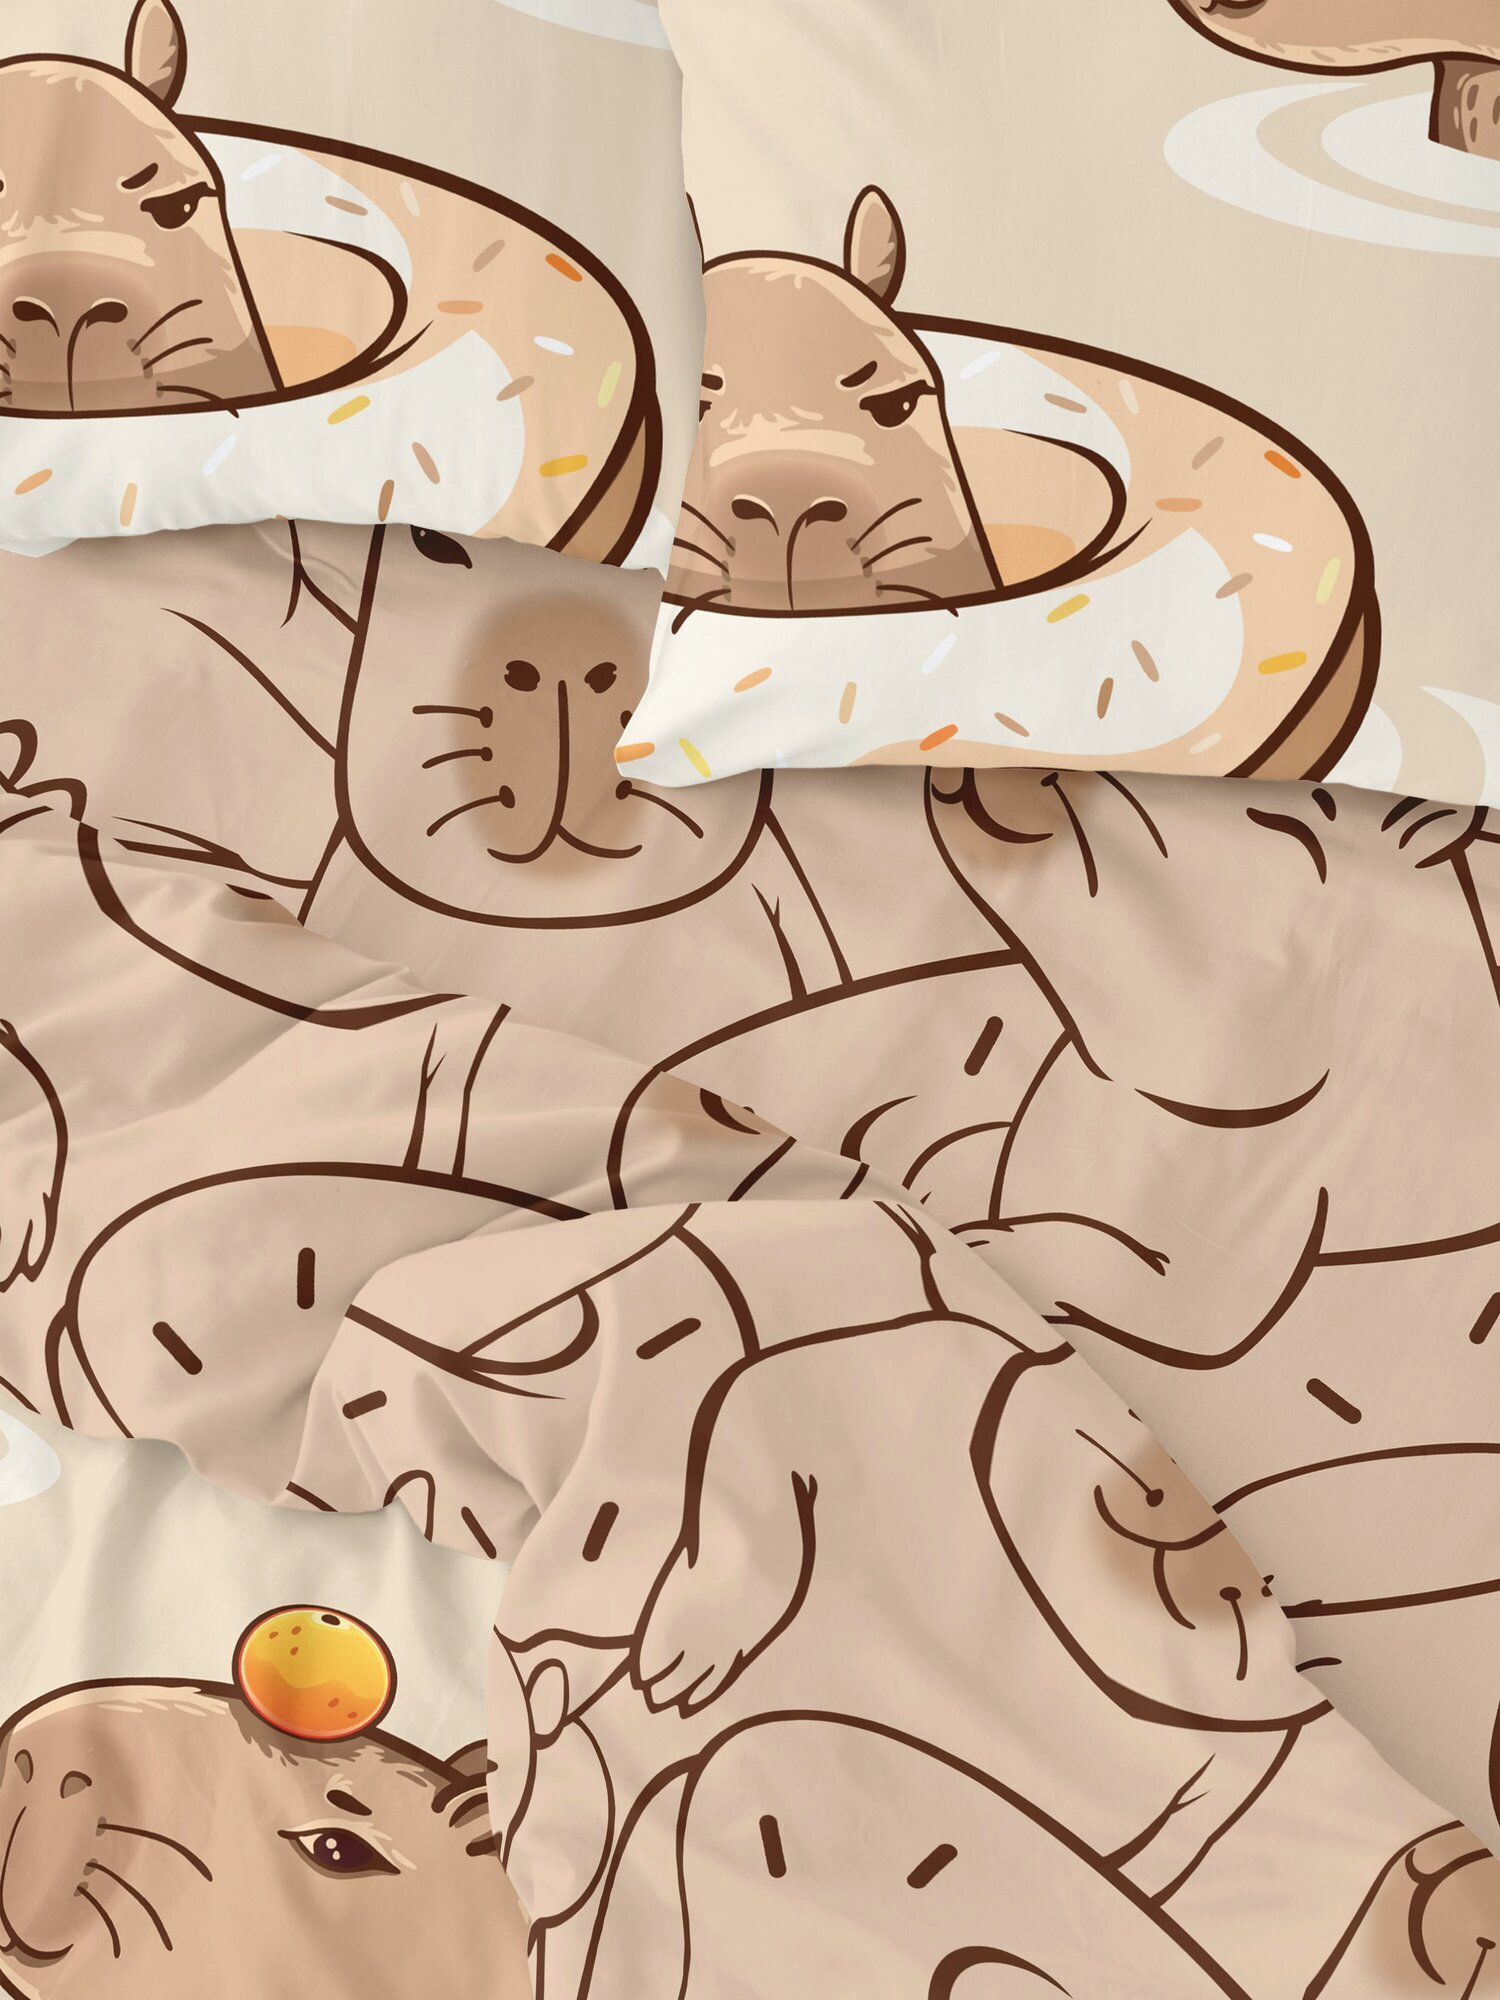 Постельное белье / комплект постельного белья 1.5 перкаль "Crazy Getup" (70х70) рис. 16767-1/16768-1 Capybara - фотография № 3